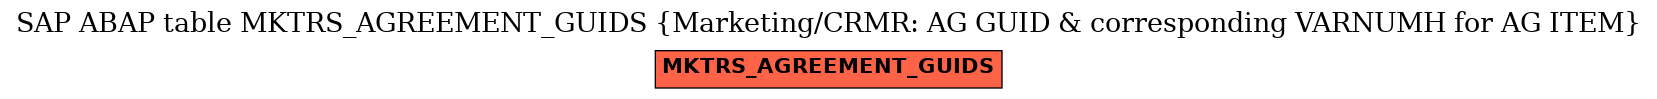 E-R Diagram for table MKTRS_AGREEMENT_GUIDS (Marketing/CRMR: AG GUID & corresponding VARNUMH for AG ITEM)